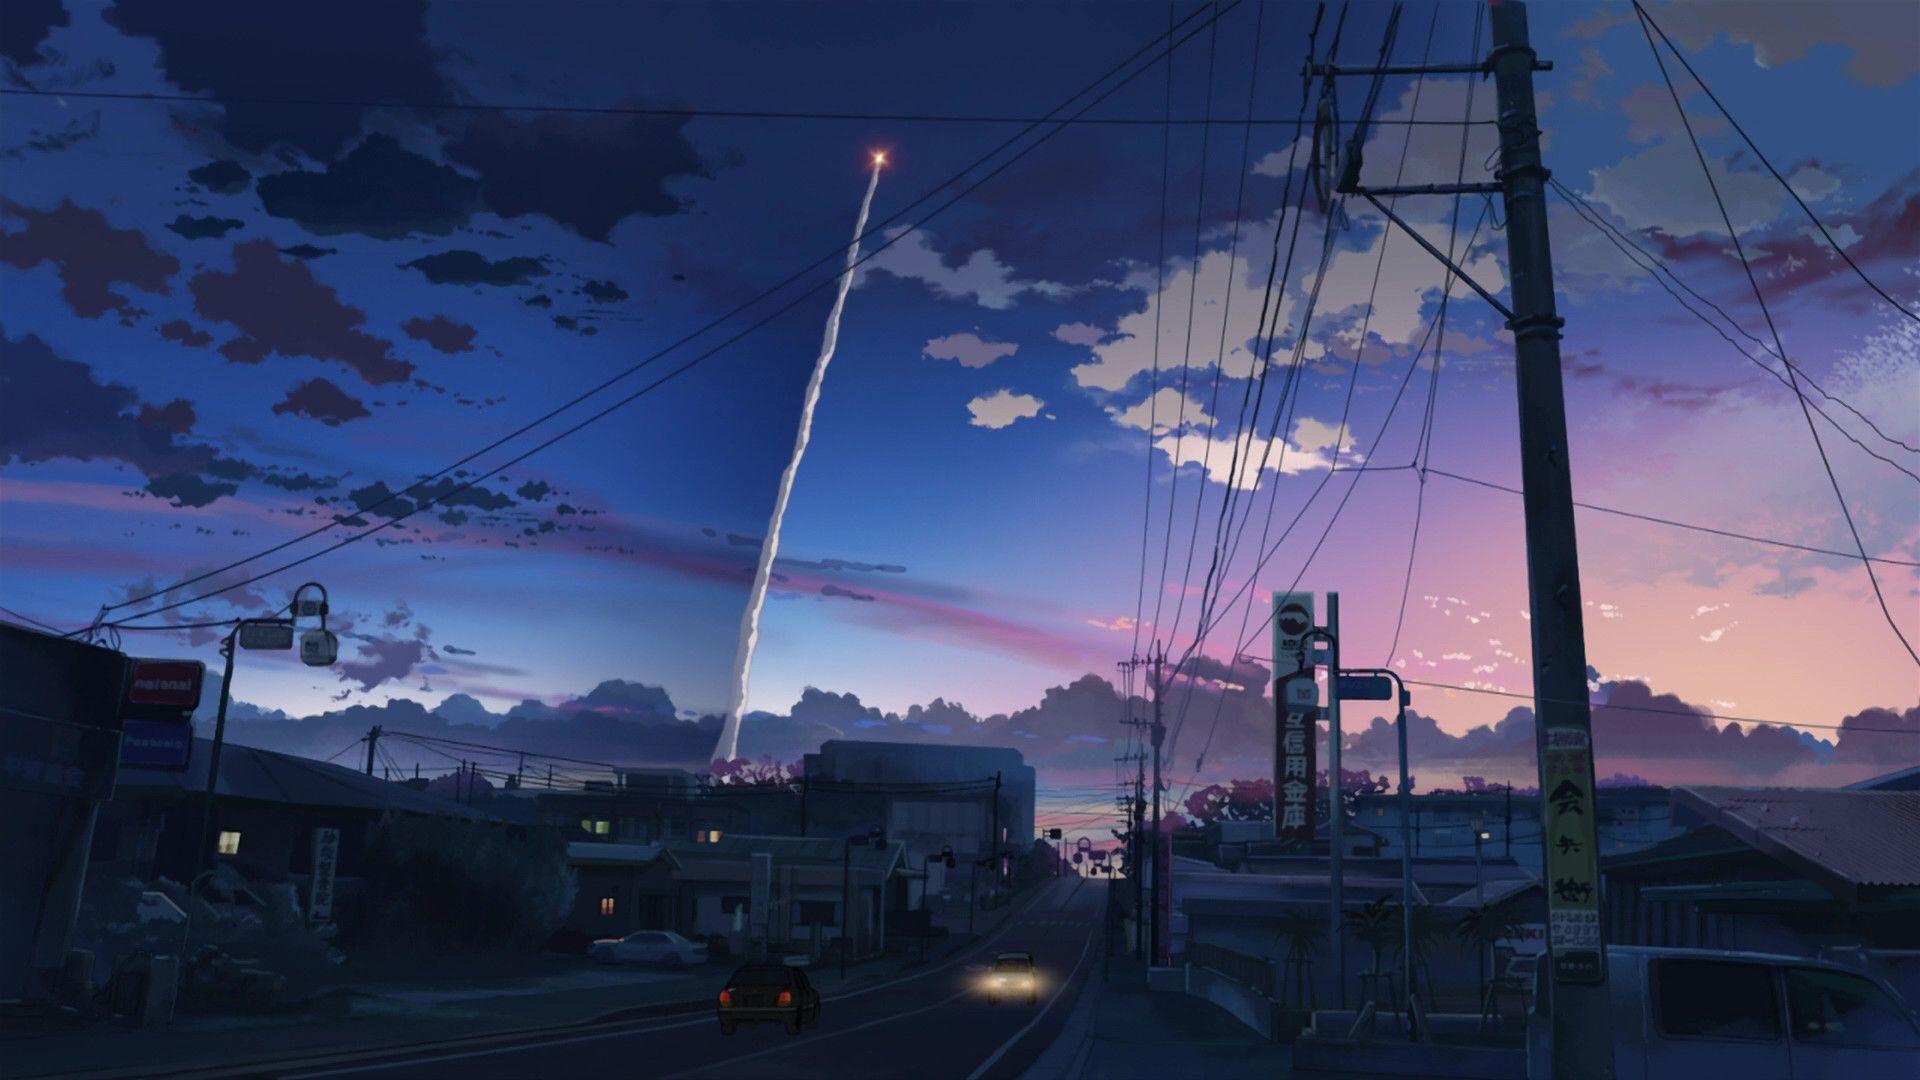 Makoto Shinkai Scenery Wallpapers Top Free Makoto Shinkai